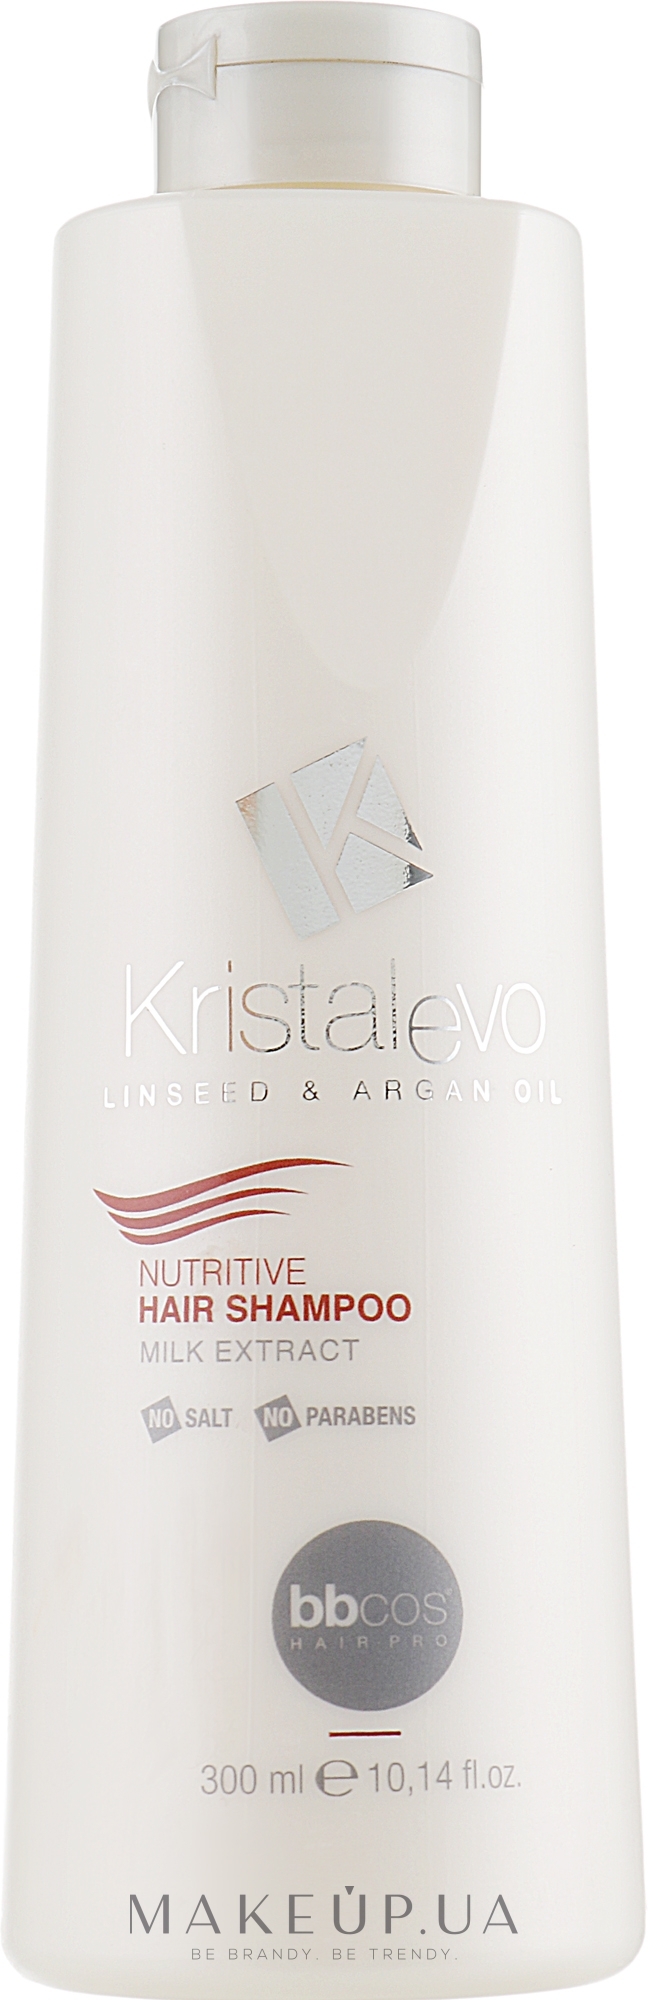 Шампунь для волосся, живильний - Bbcos Kristal Evo Nutritive Hair Shampoo — фото 300ml